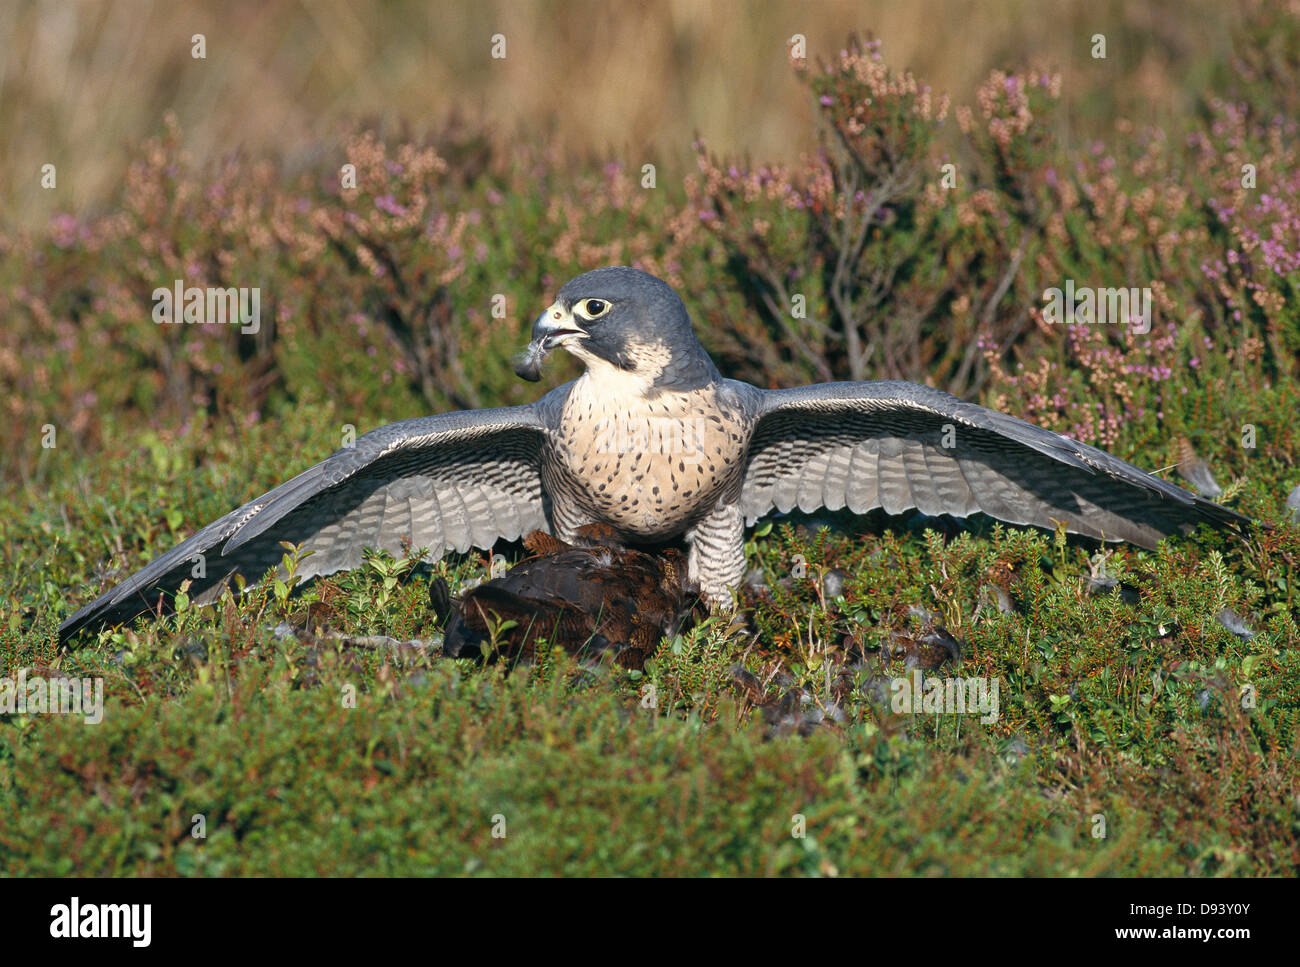 A pergrine falcon. Stock Photo